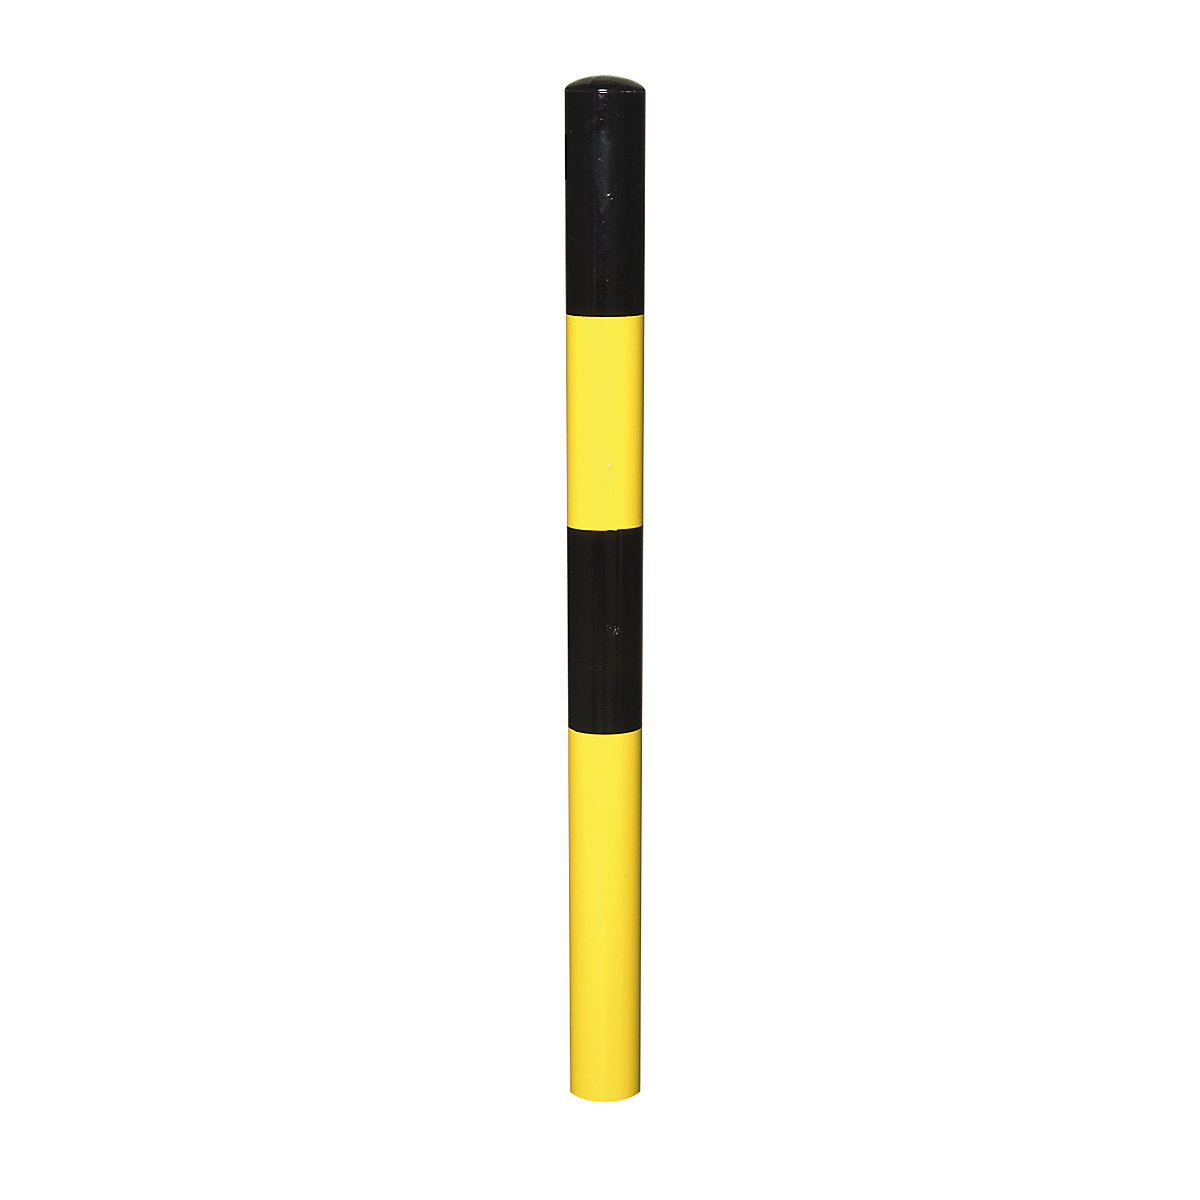 Zahradzovací stĺpik, na zabetónovanie, Ø 76 mm, čierno-žlto lakované, 2 oká-4